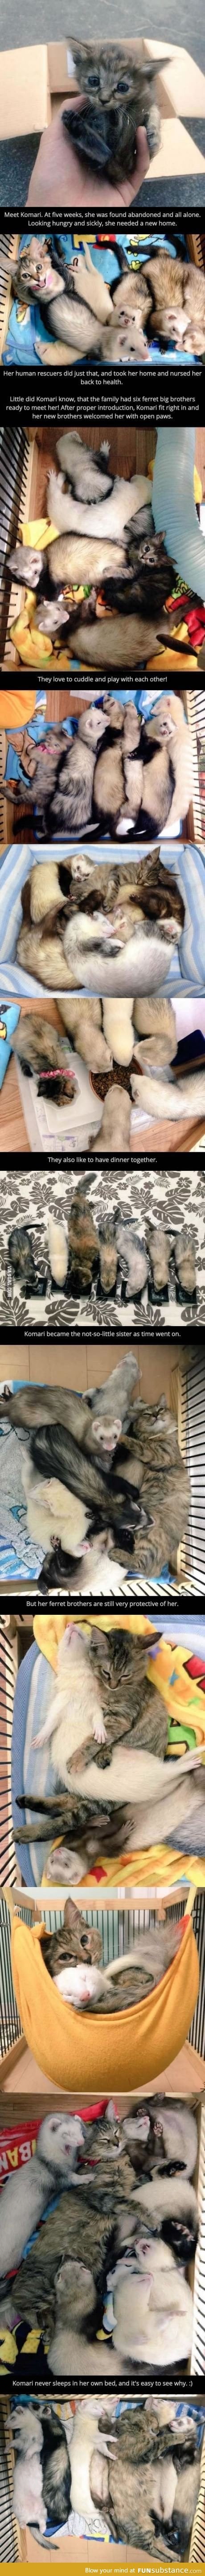 Why I love ferrets